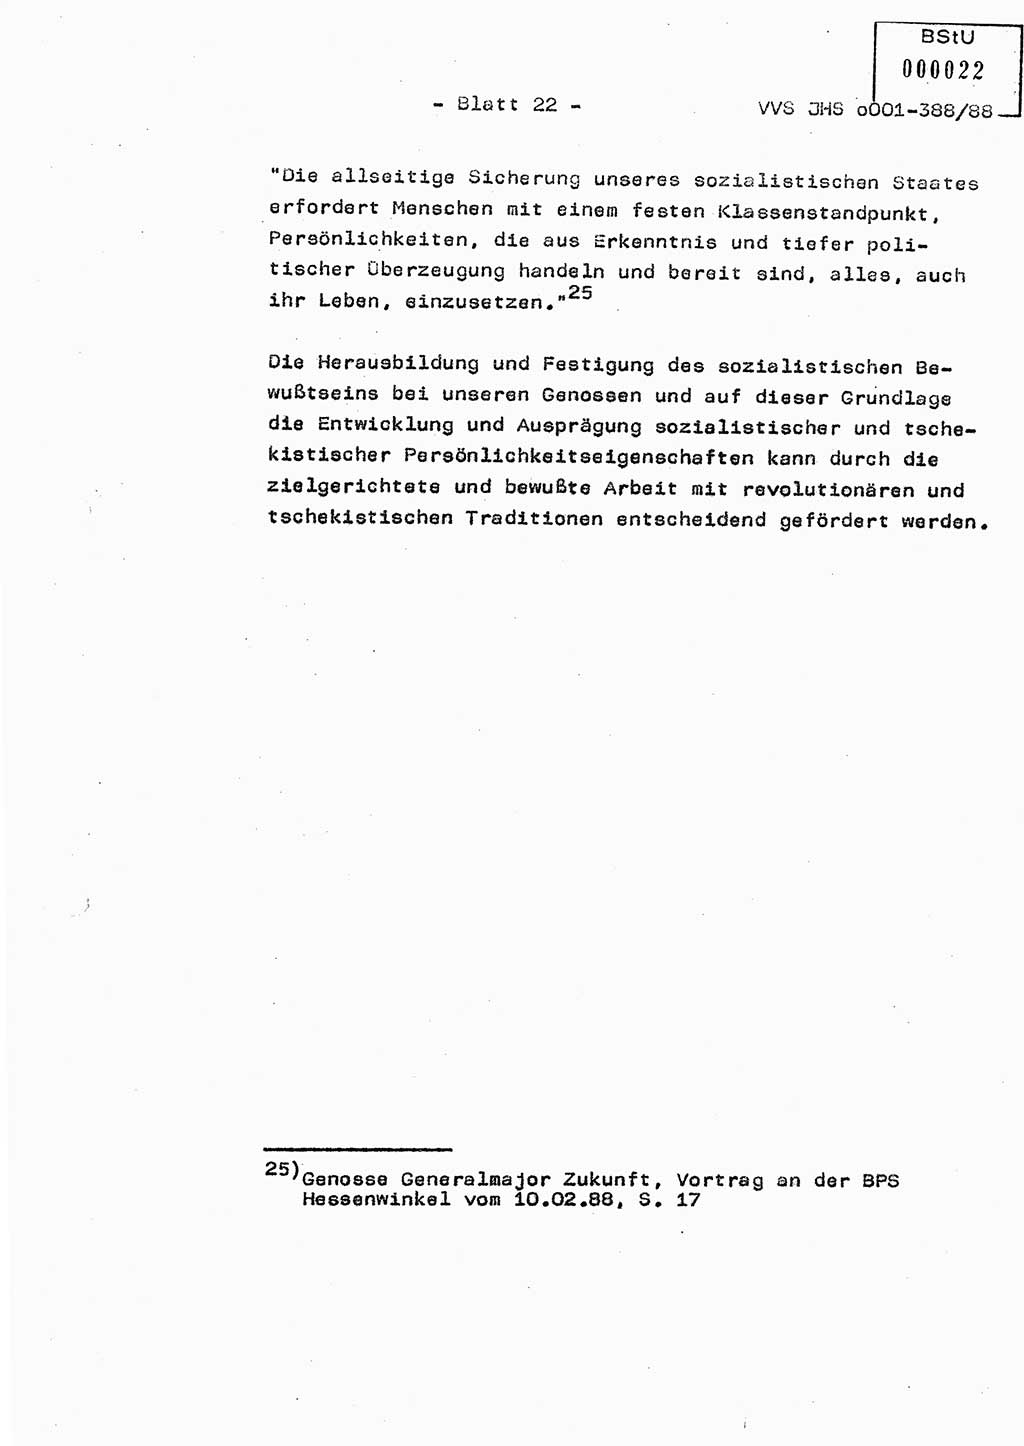 Diplomarbeit Hauptmann Heinz Brixel (Abt. ⅩⅣ), Ministerium für Staatssicherheit (MfS) [Deutsche Demokratische Republik (DDR)], Juristische Hochschule (JHS), Vertrauliche Verschlußsache (VVS) o001-388/88, Potsdam 1988, Blatt 22 (Dipl.-Arb. MfS DDR JHS VVS o001-388/88 1988, Bl. 22)